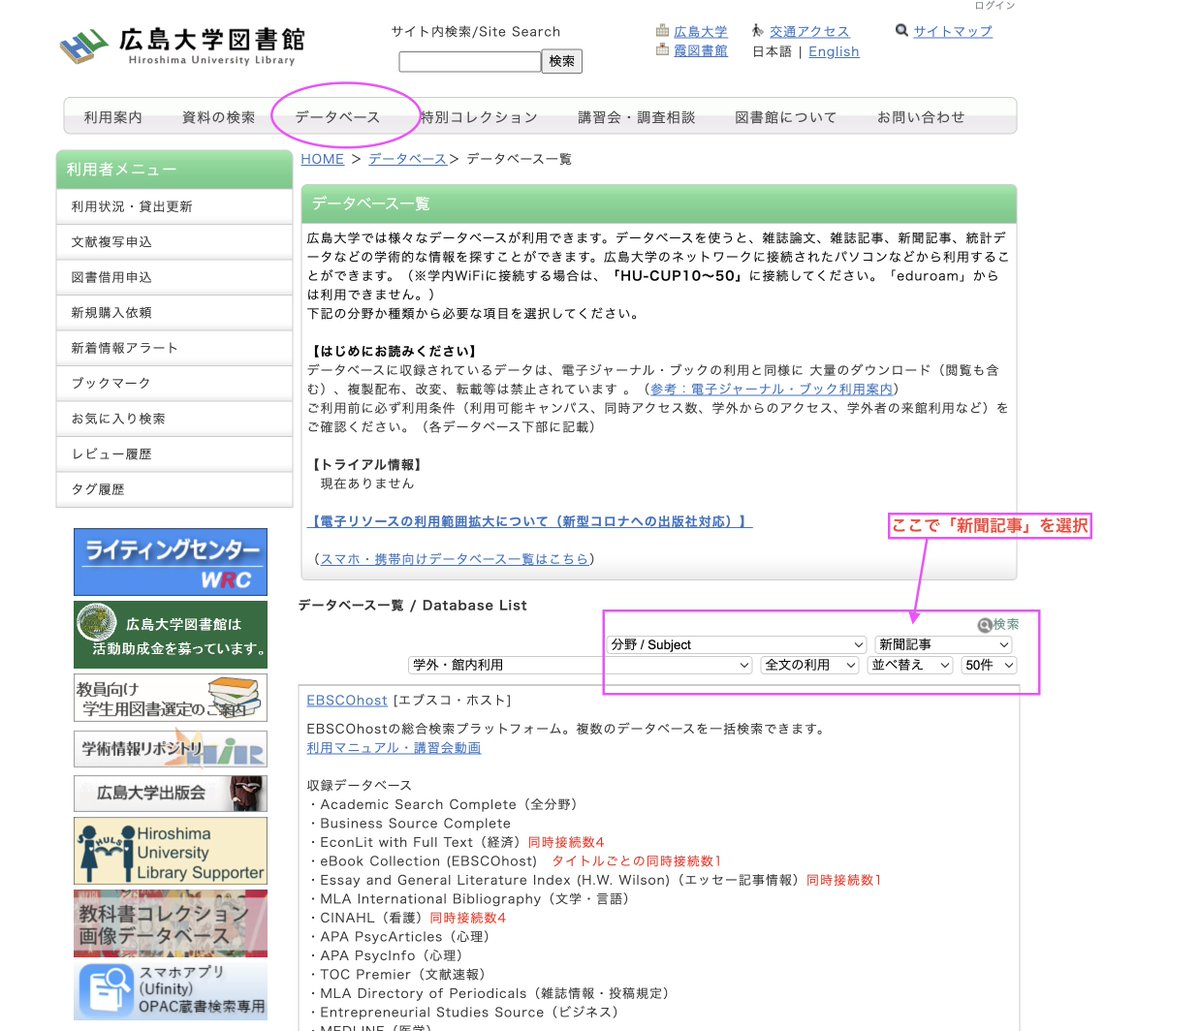 広島大学の方は、広大・図書館サイトの「データベース一覧」「毎索 (毎日新聞記事データベース)」を活用すれば記事を閲覧することができますよ〜〜😊😊